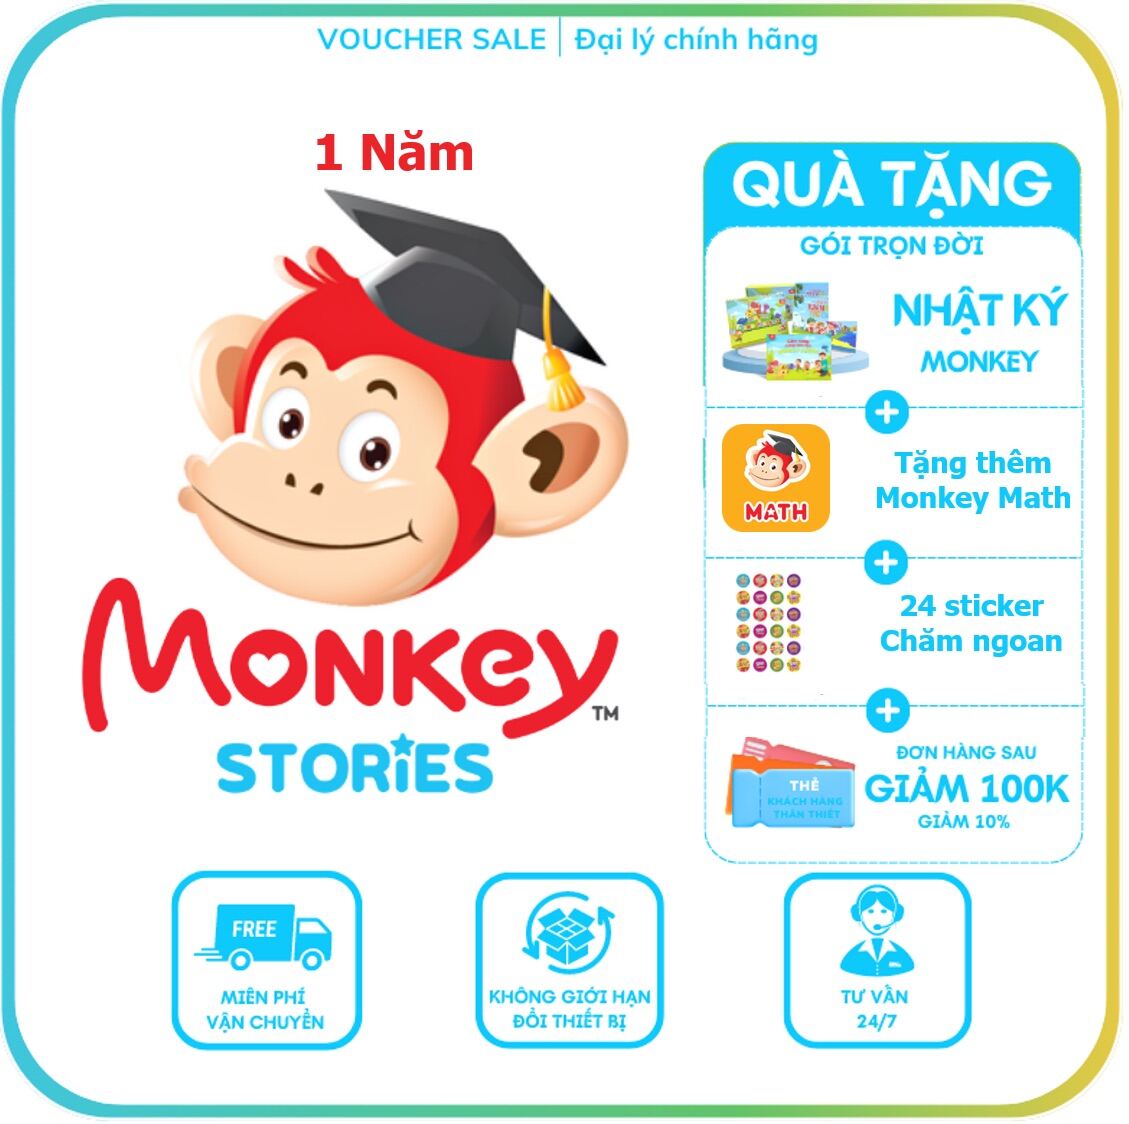 Monkey Stories 1 năm - Truyện tương tác Phát triển toàn diện 4 kỹ năng